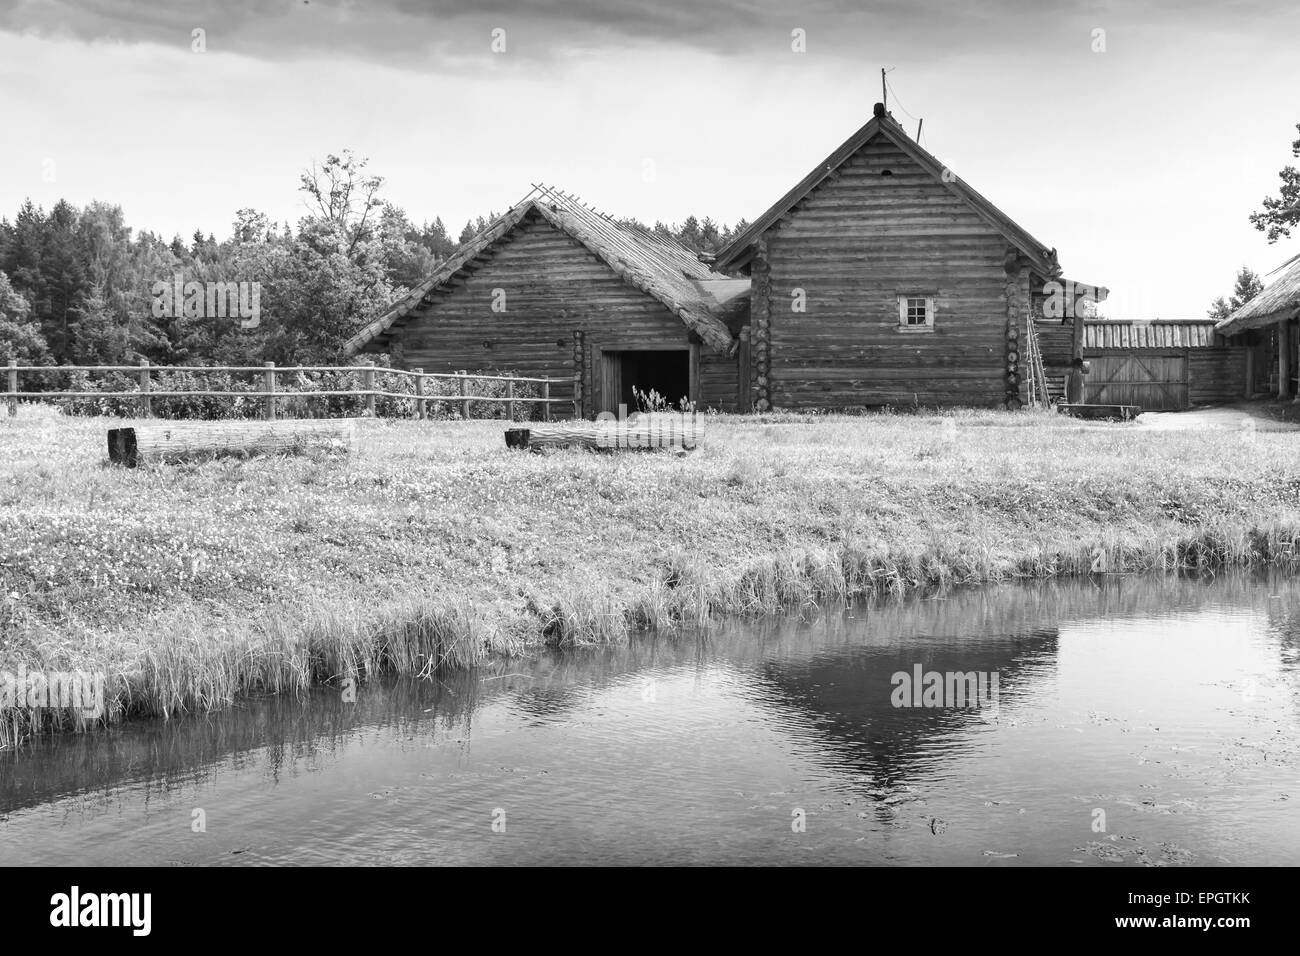 Les Russes par exemple l'architecture en bois, vieilles maisons sur la côte du lac, photo en noir et blanc Banque D'Images